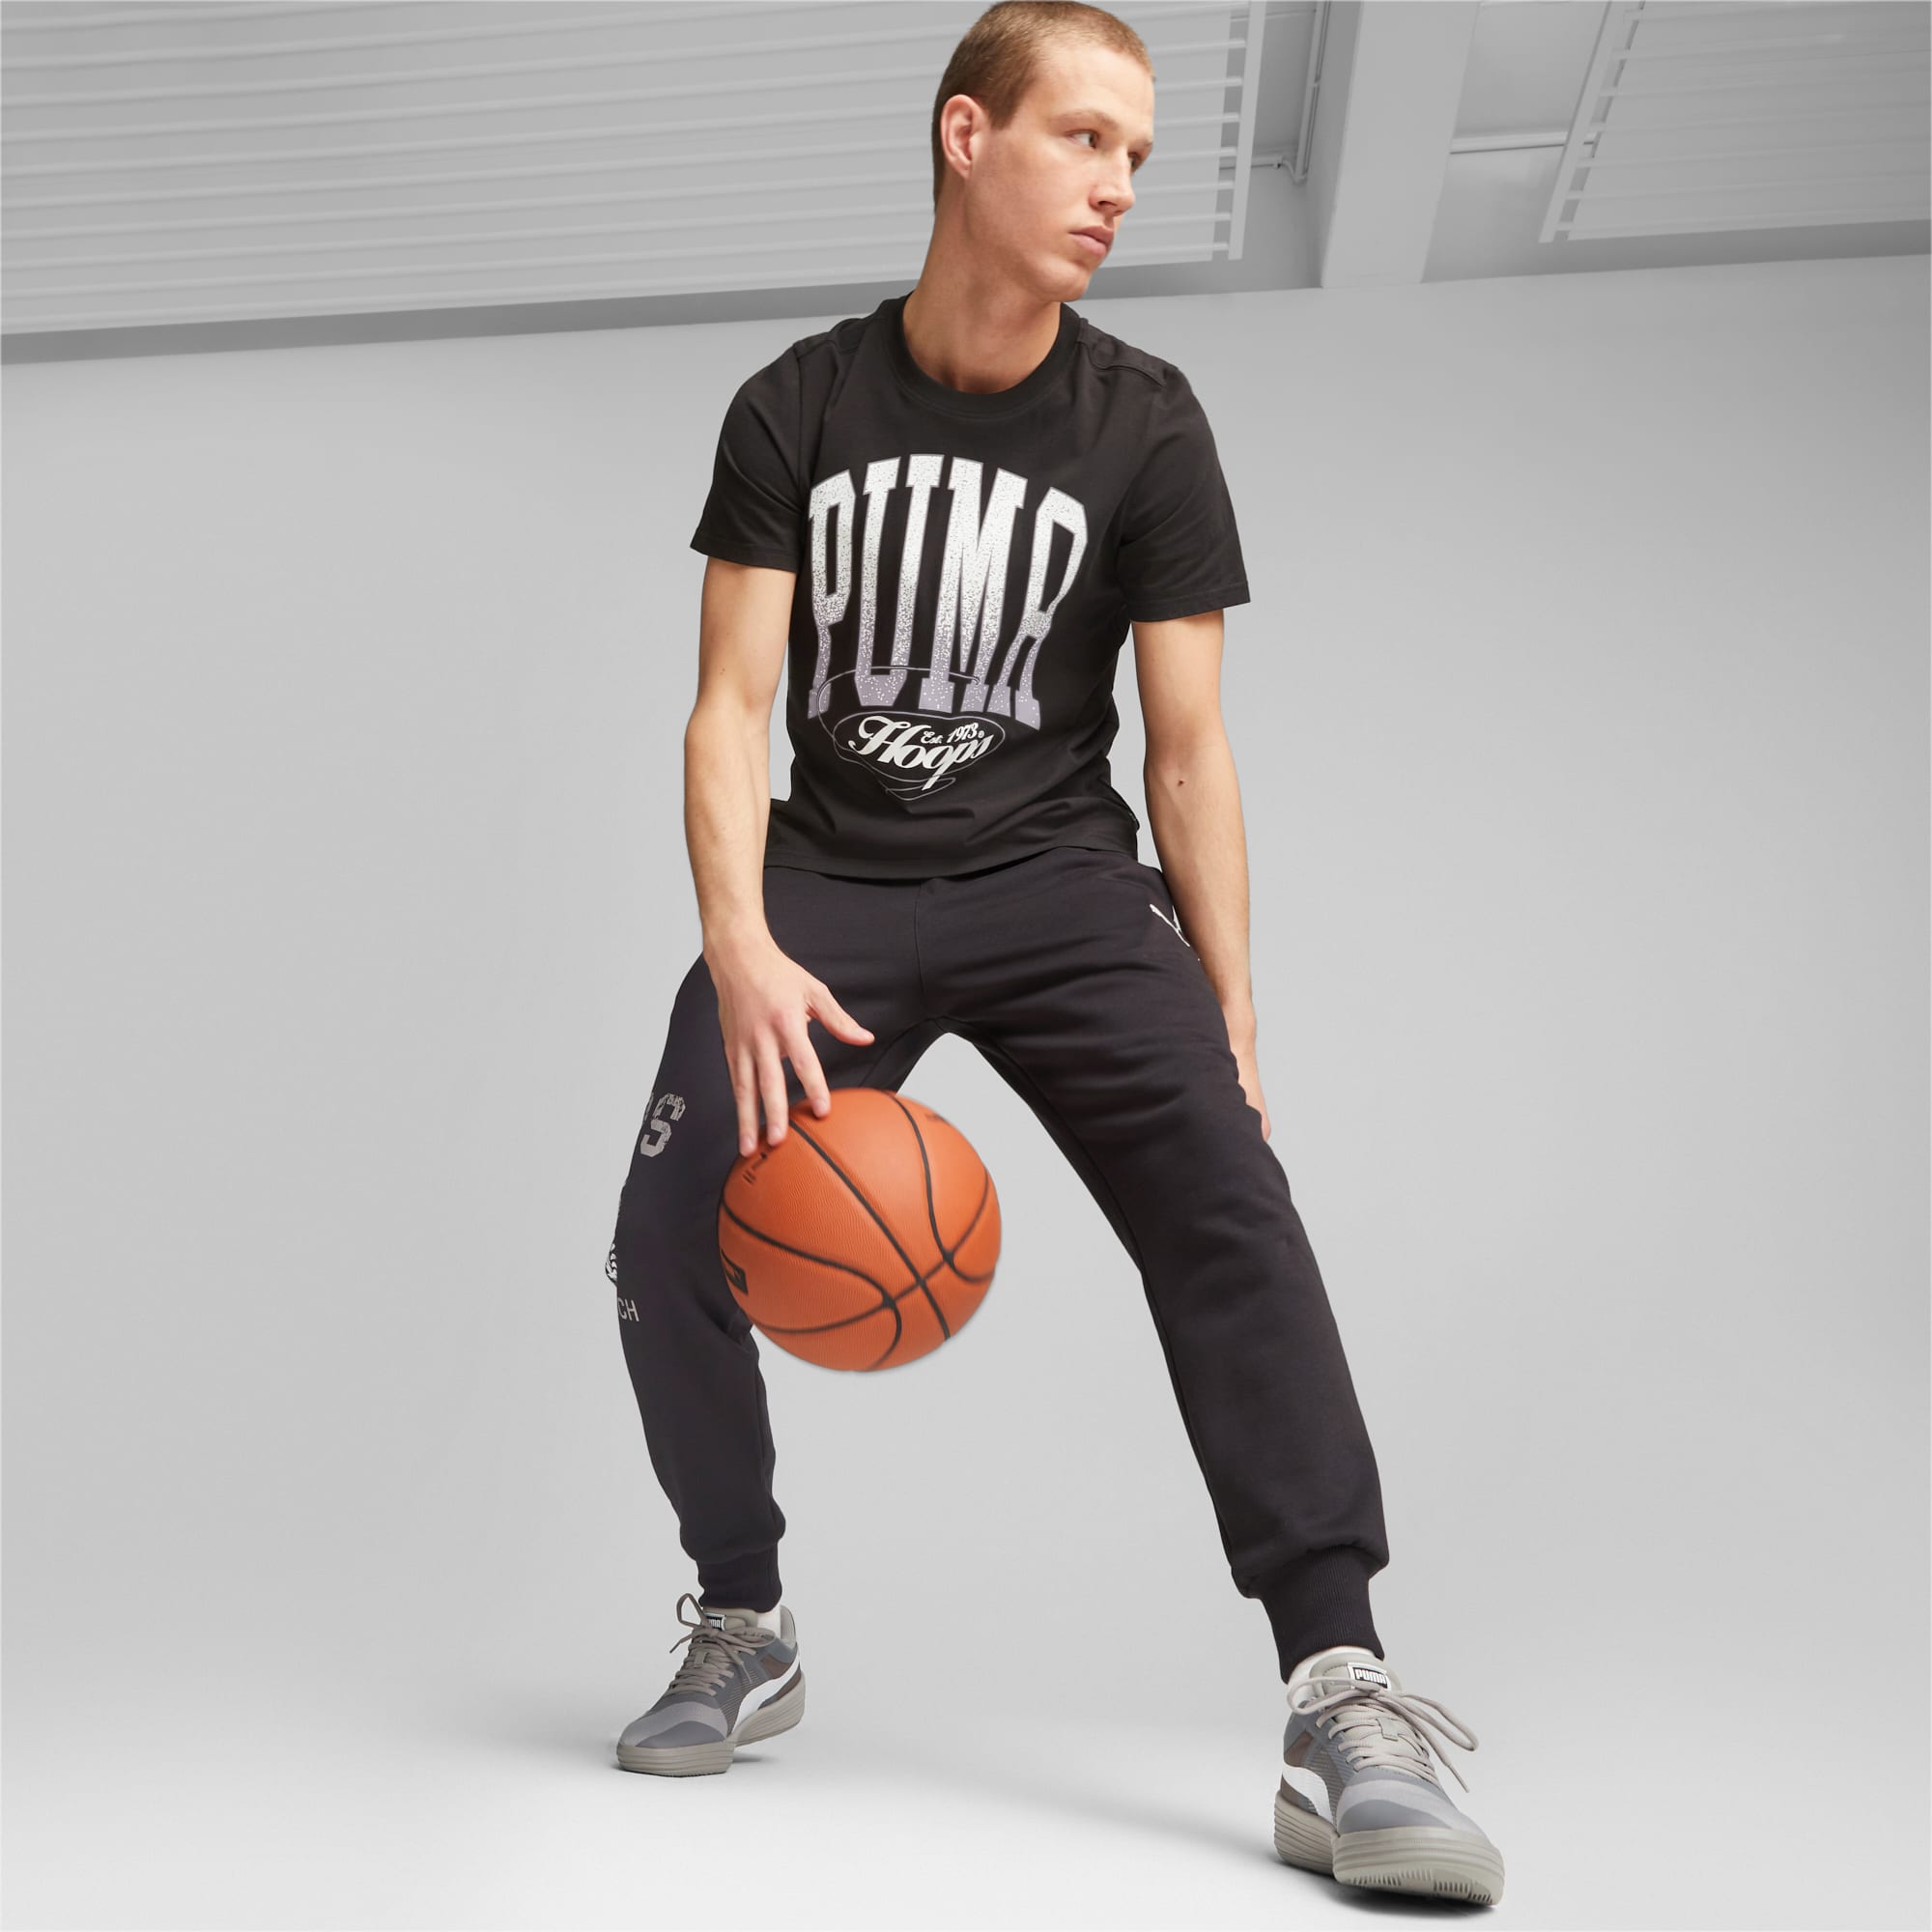 PUMA Clyde All-Pro Team Basketballschuhe Für Herren, Grau/Weiß, Größe: 47, Schuhe